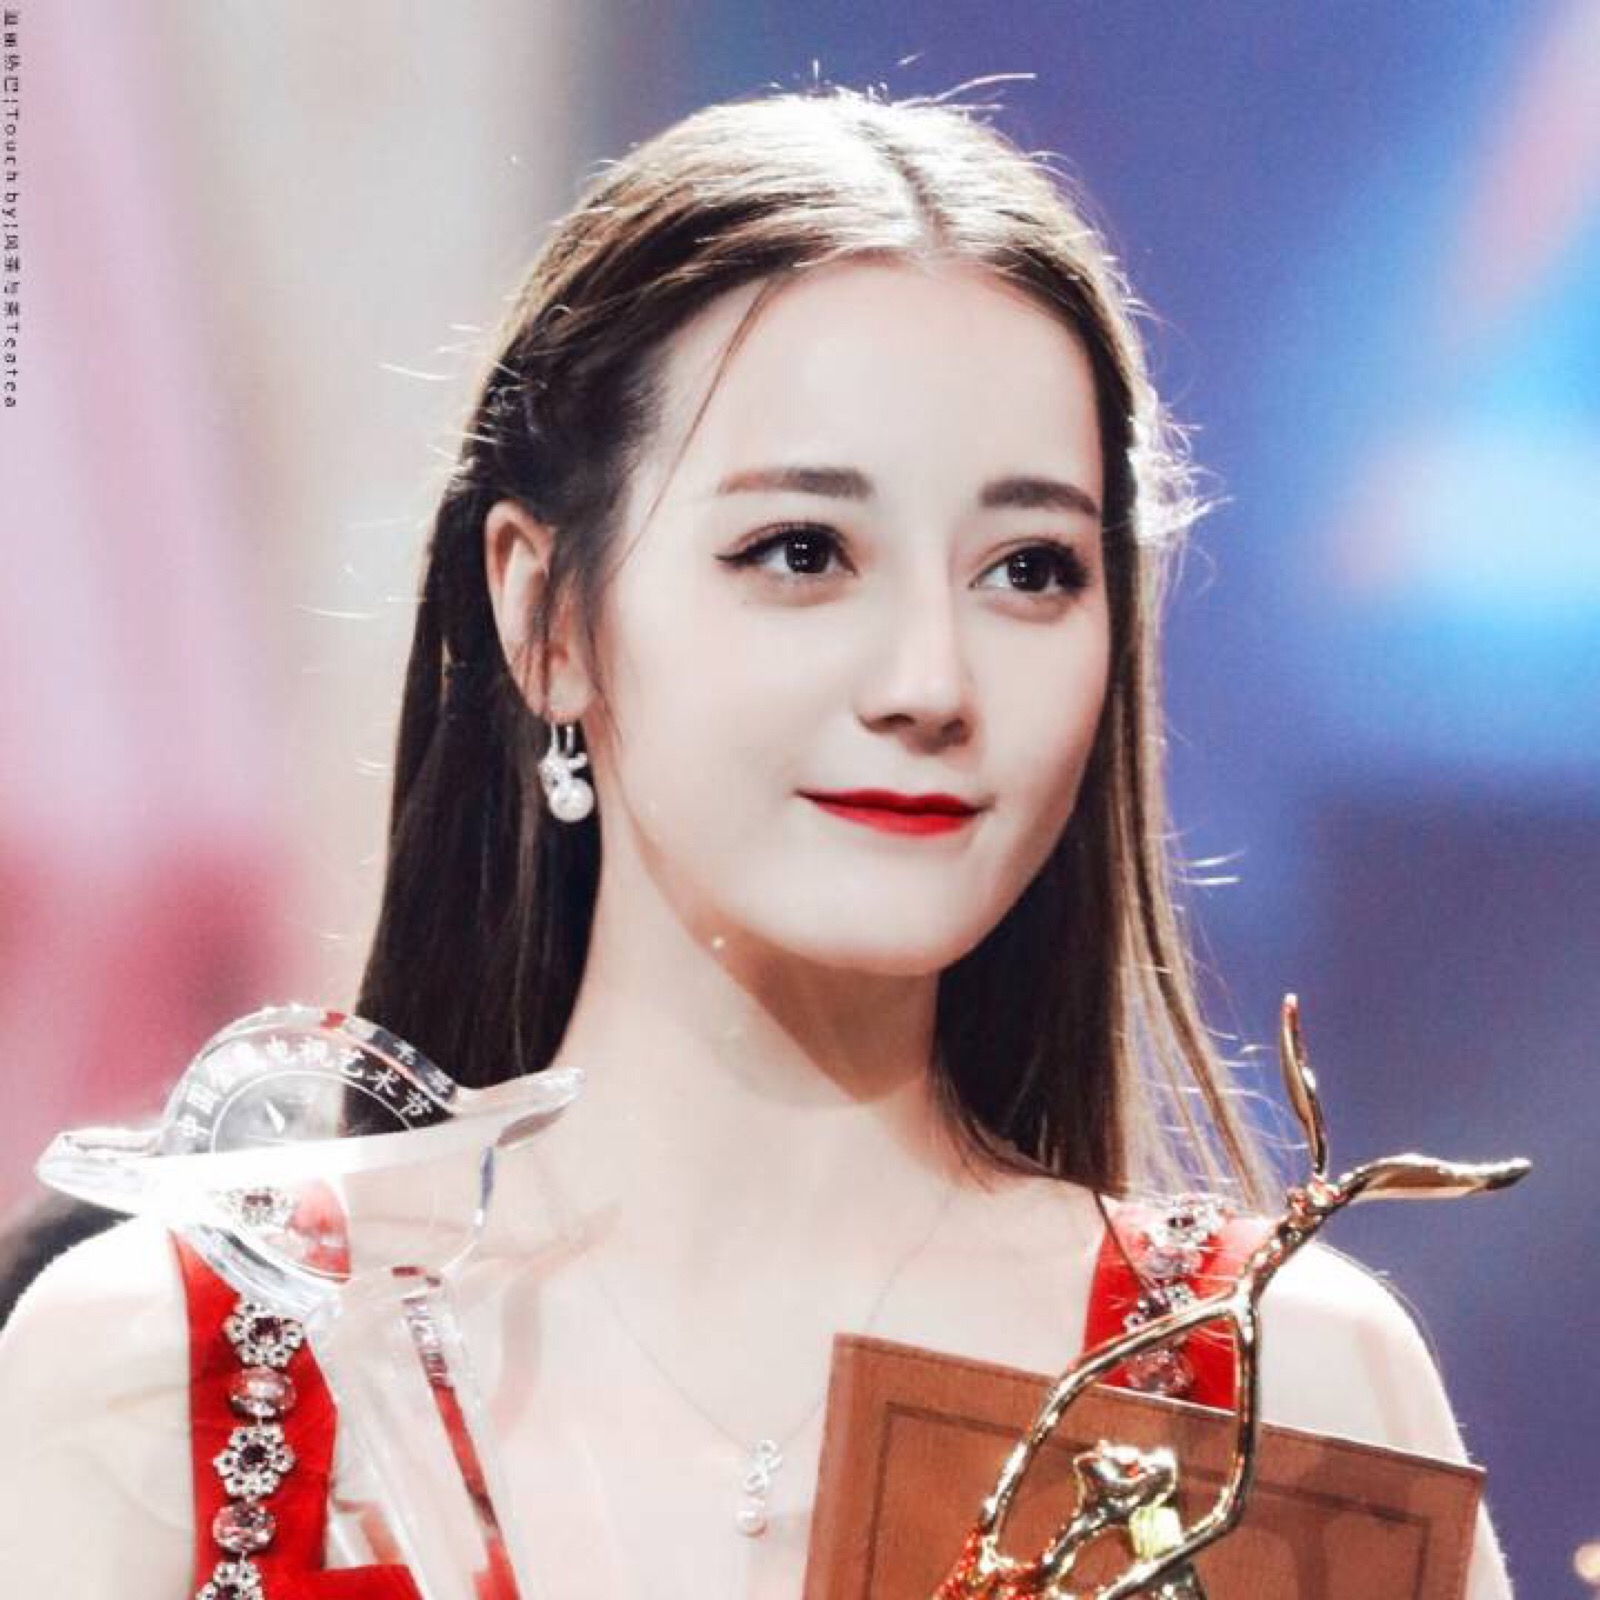 迪丽热巴在韩国颁奖图片